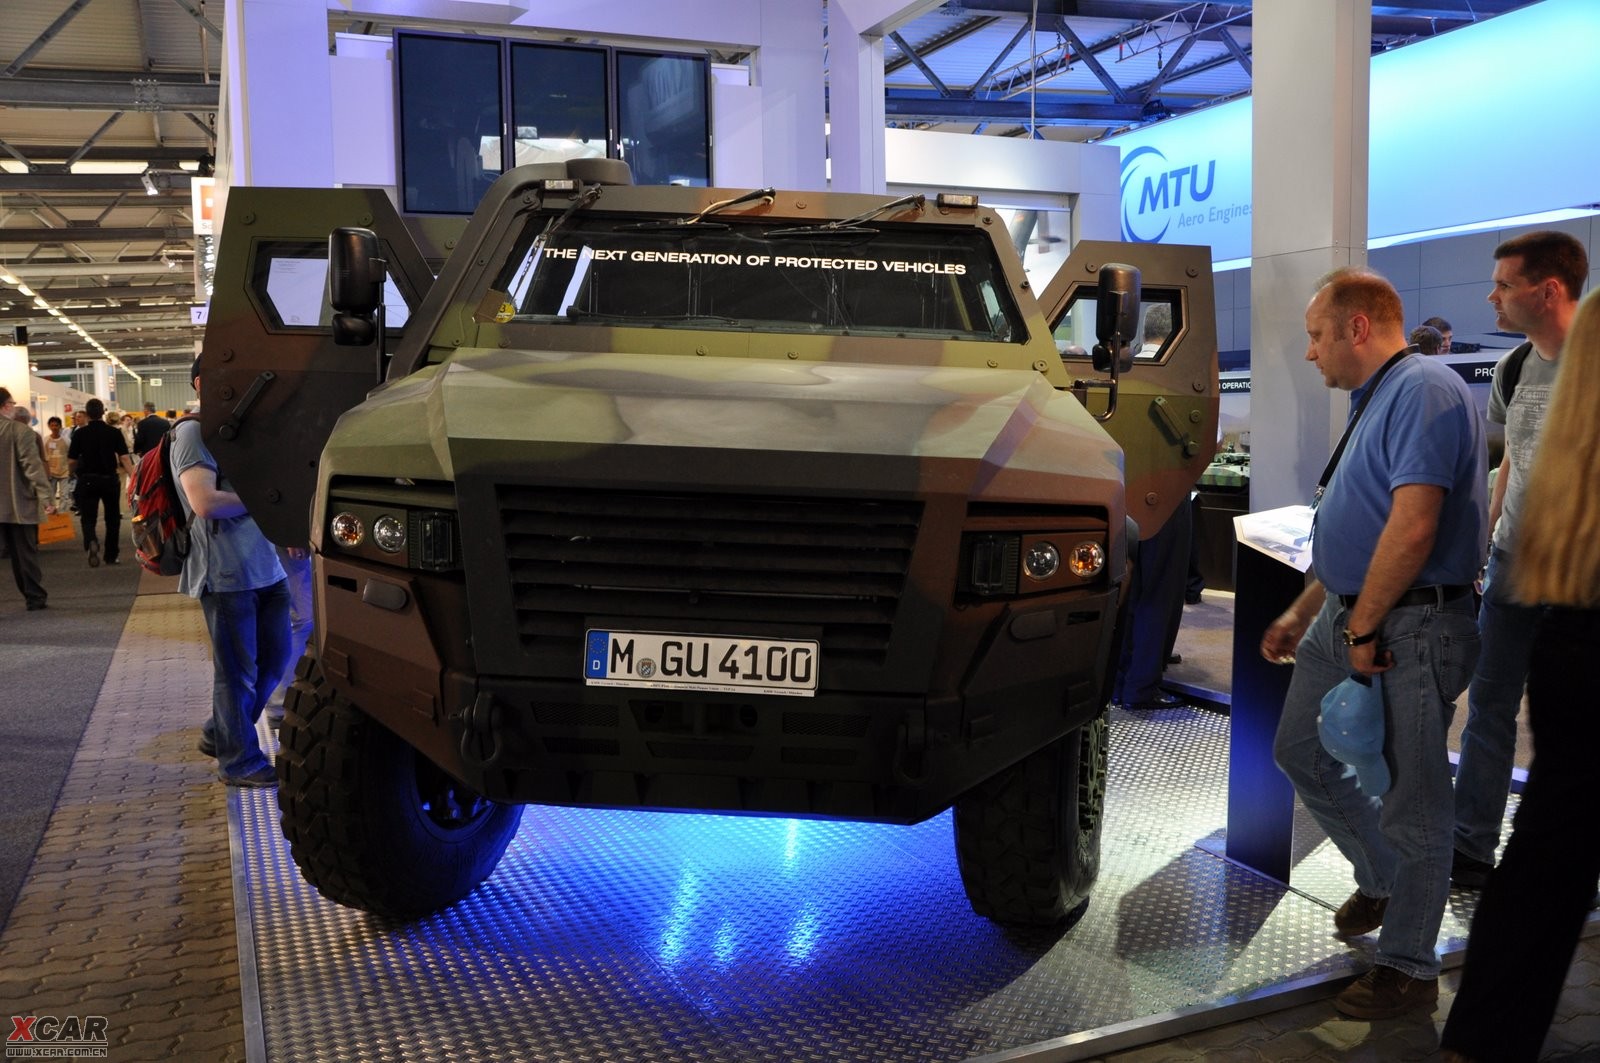 周末放图德国下一代多用途ampv轻型装甲车